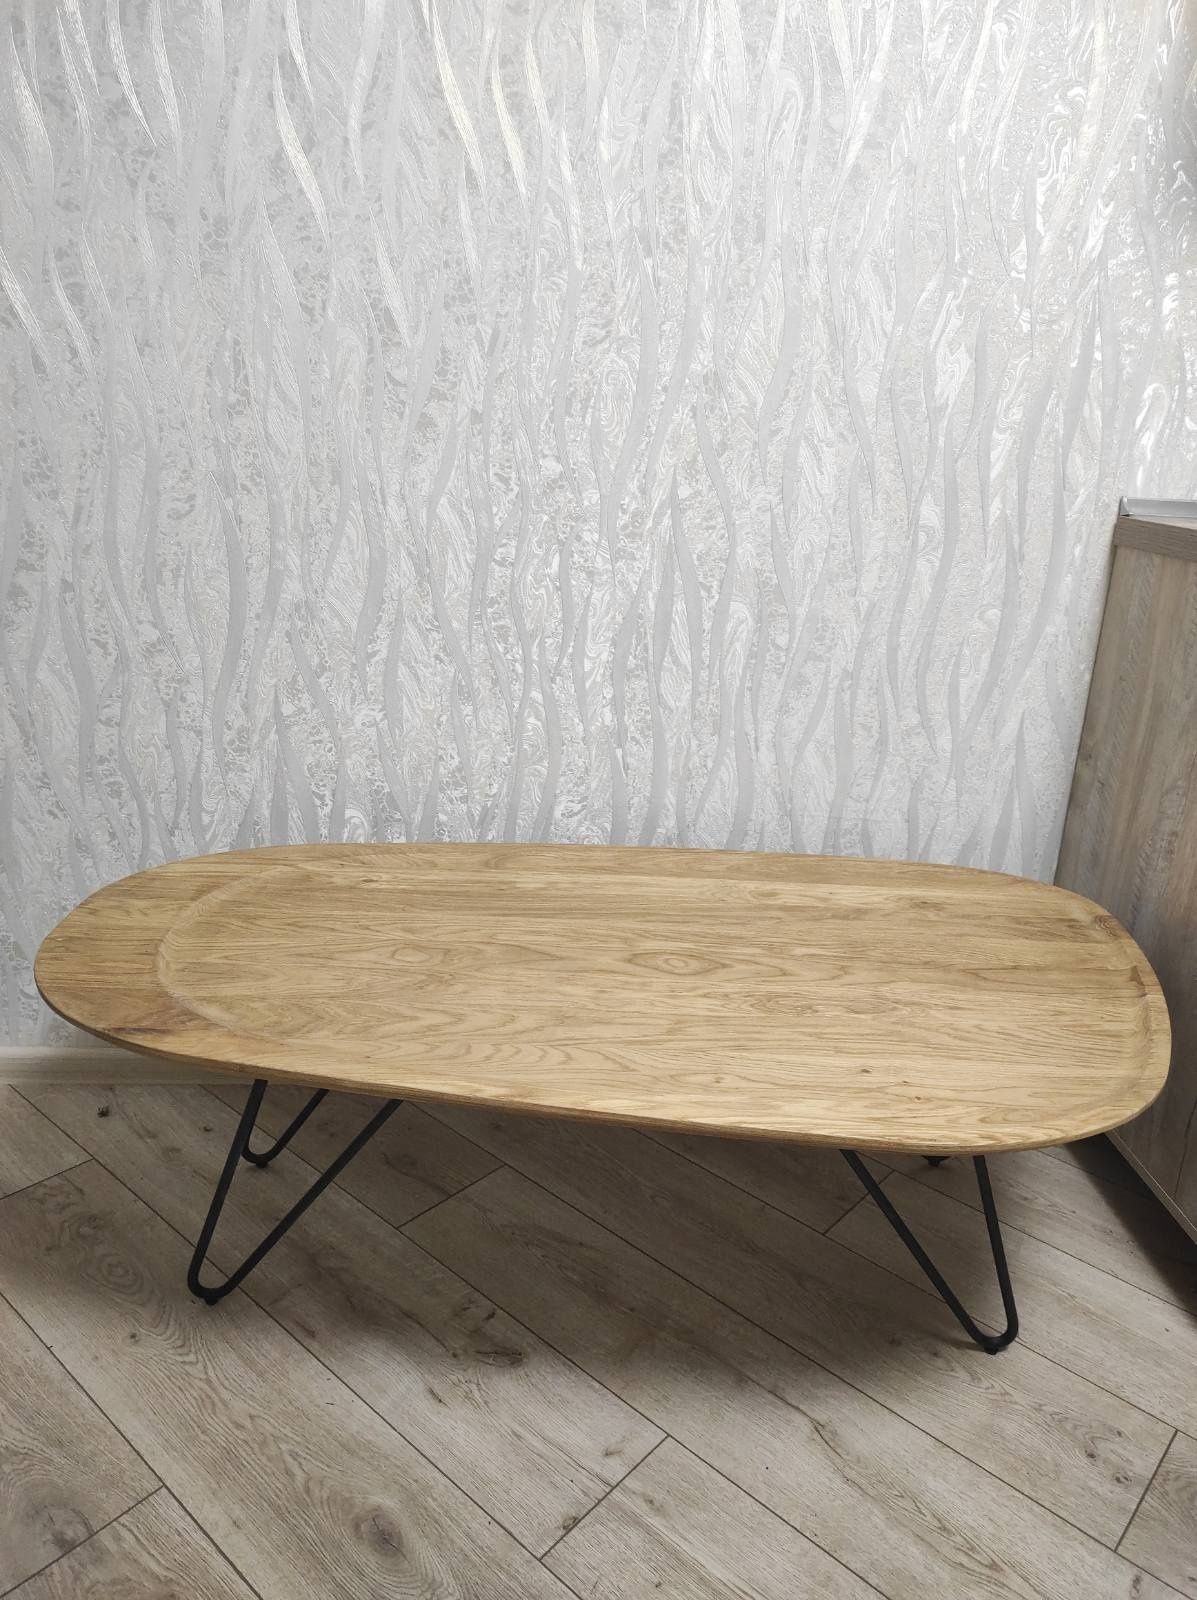 Продам оригинальный и стильный буковый стол. Производство Польши.